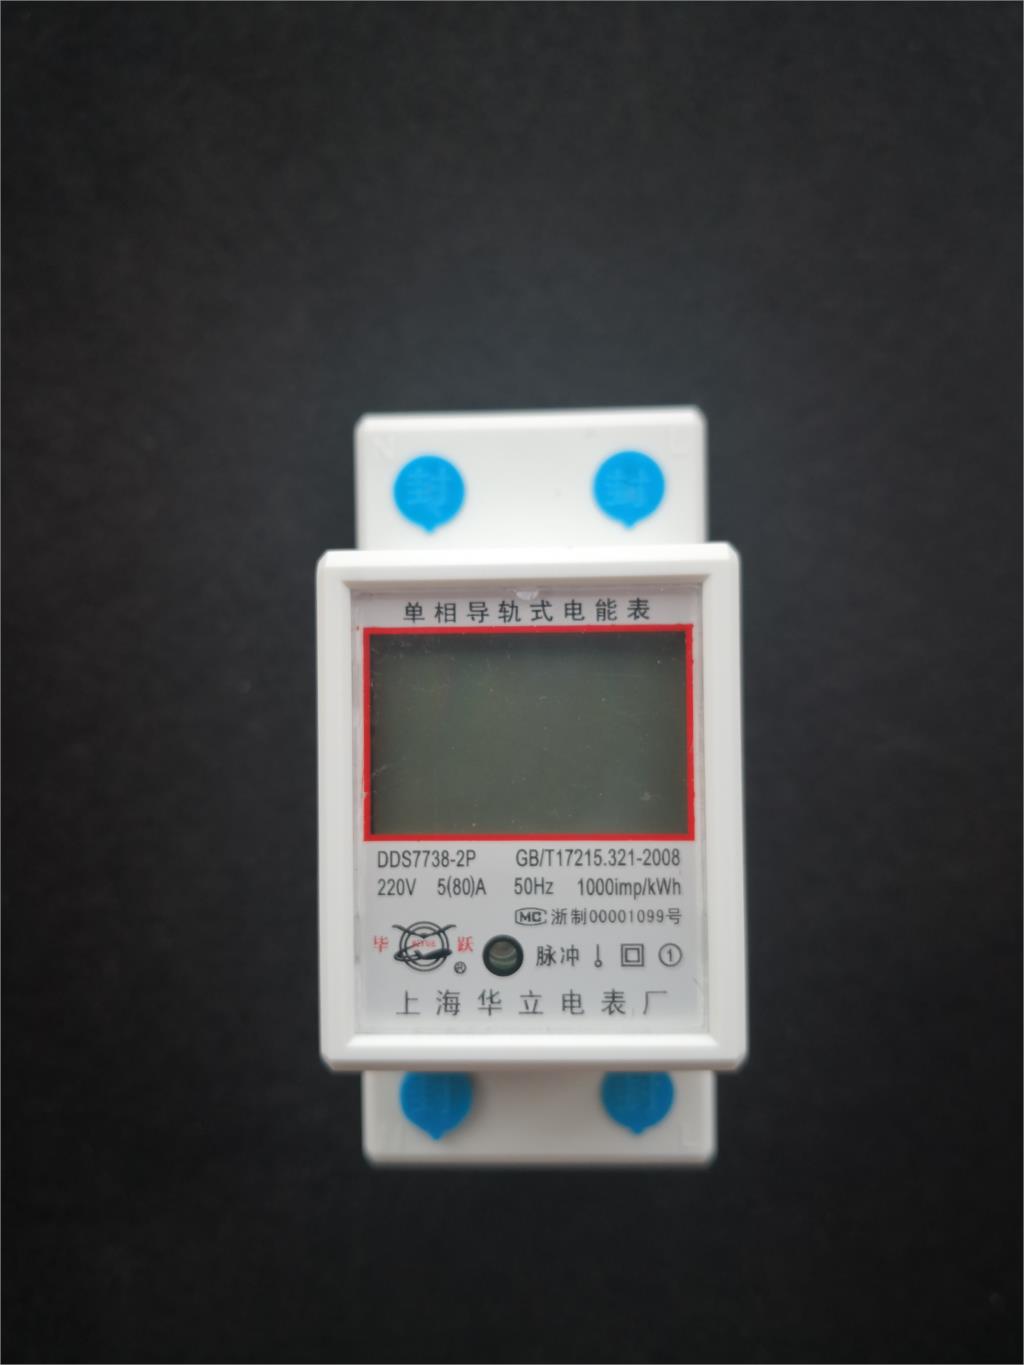 LCD-Digital-Display-Power-Consumption-Meter-Single-Phase-Energy-Meter-Watt-Wattmeter-kWh-230V-AC-50H-1418654